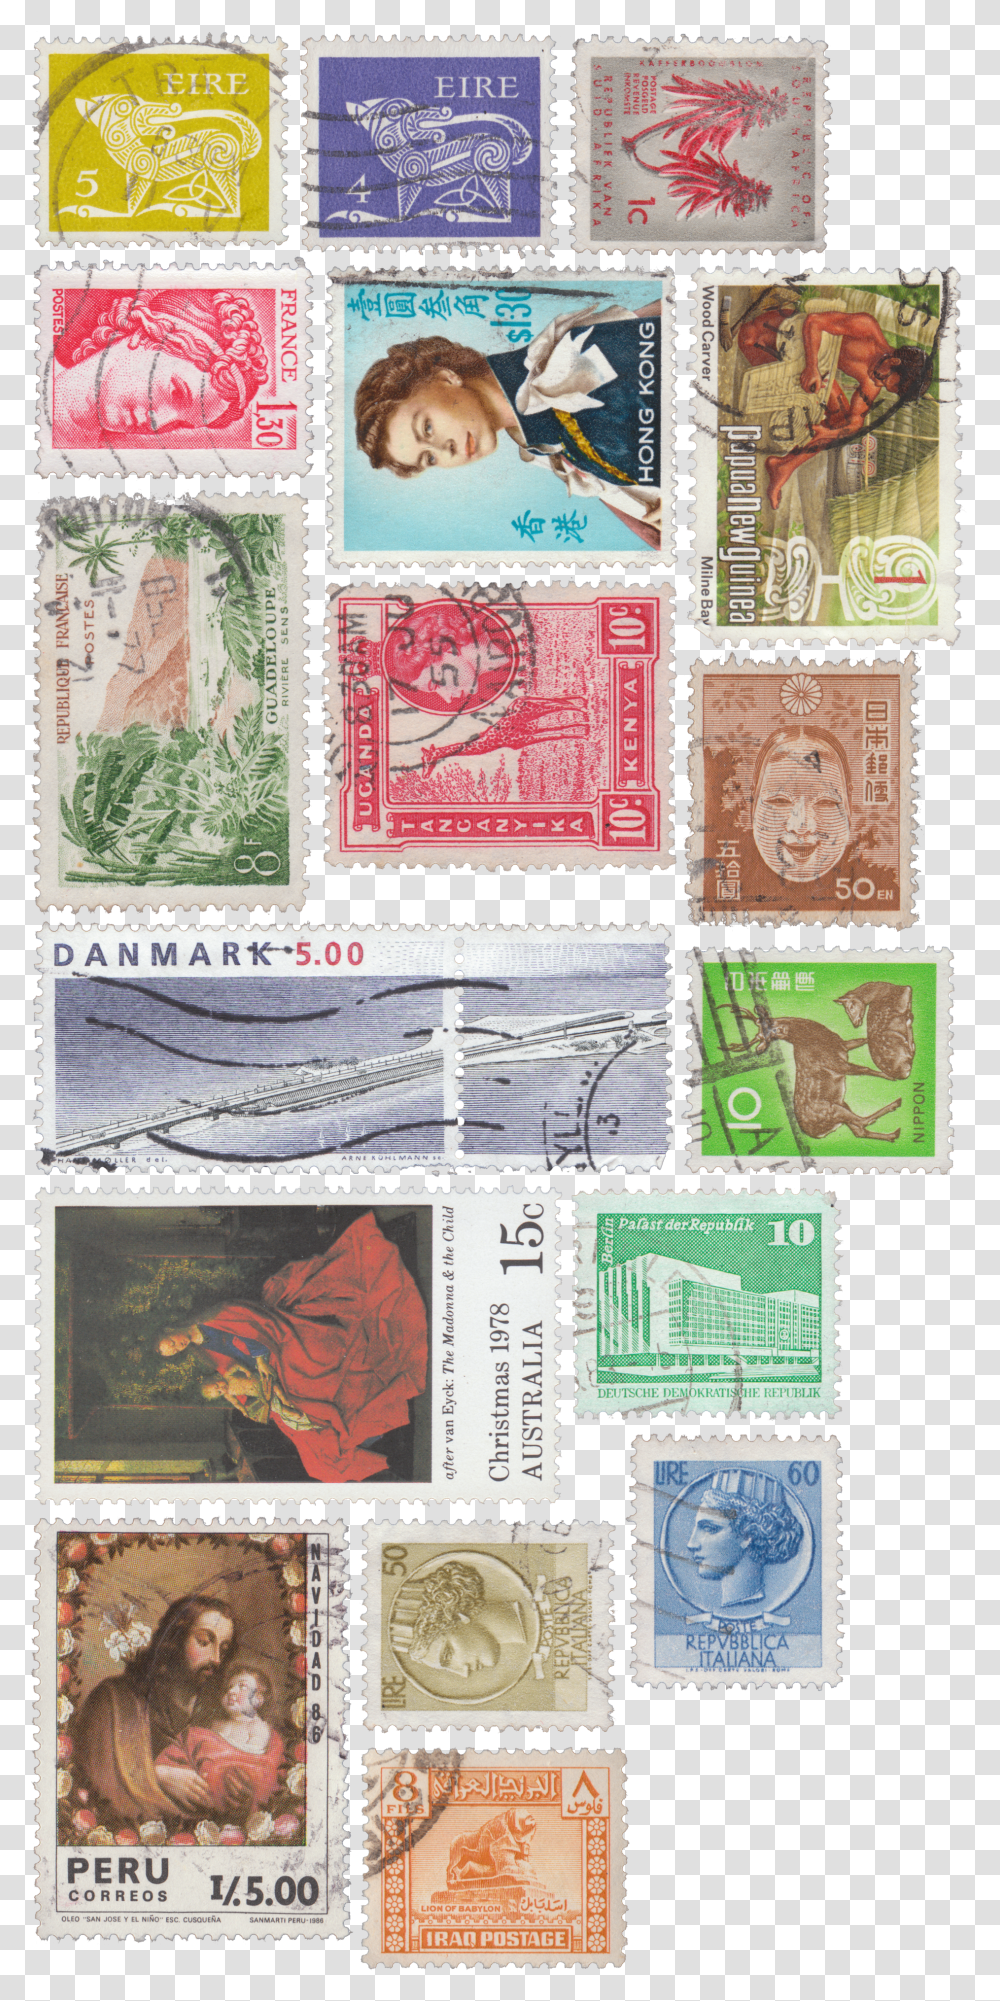 V 1 8 0 Kbyte Postage Stamps U Postage Stamps Transparent Png